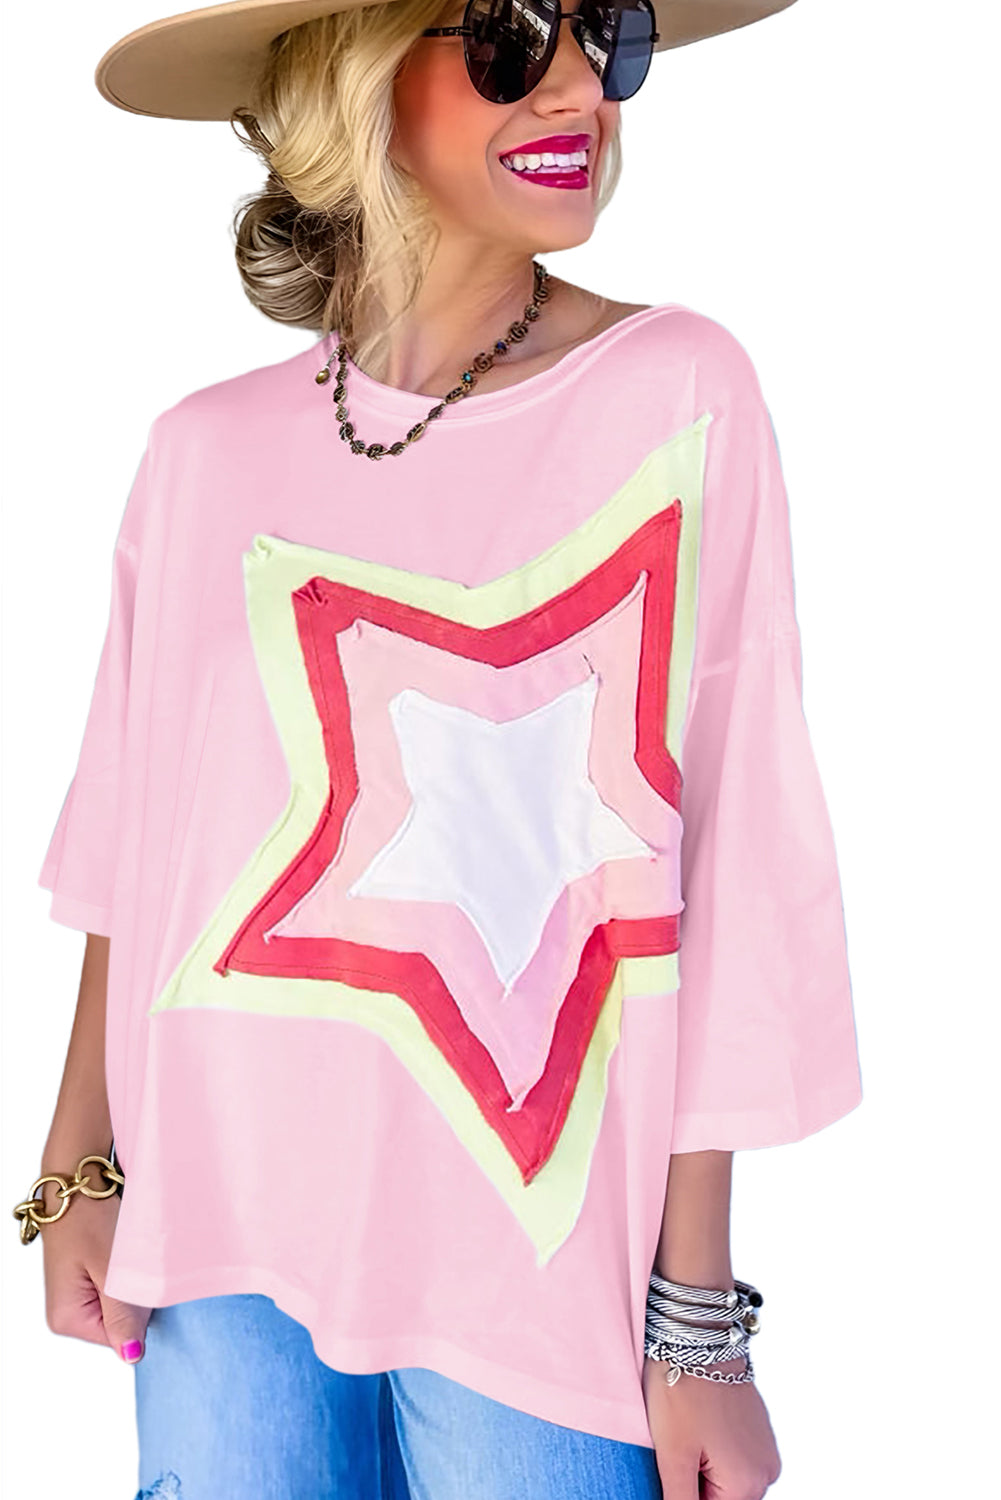 Svjetloružičasta velika majica do pola rukava sa zakrpama i zvijezdama u boji